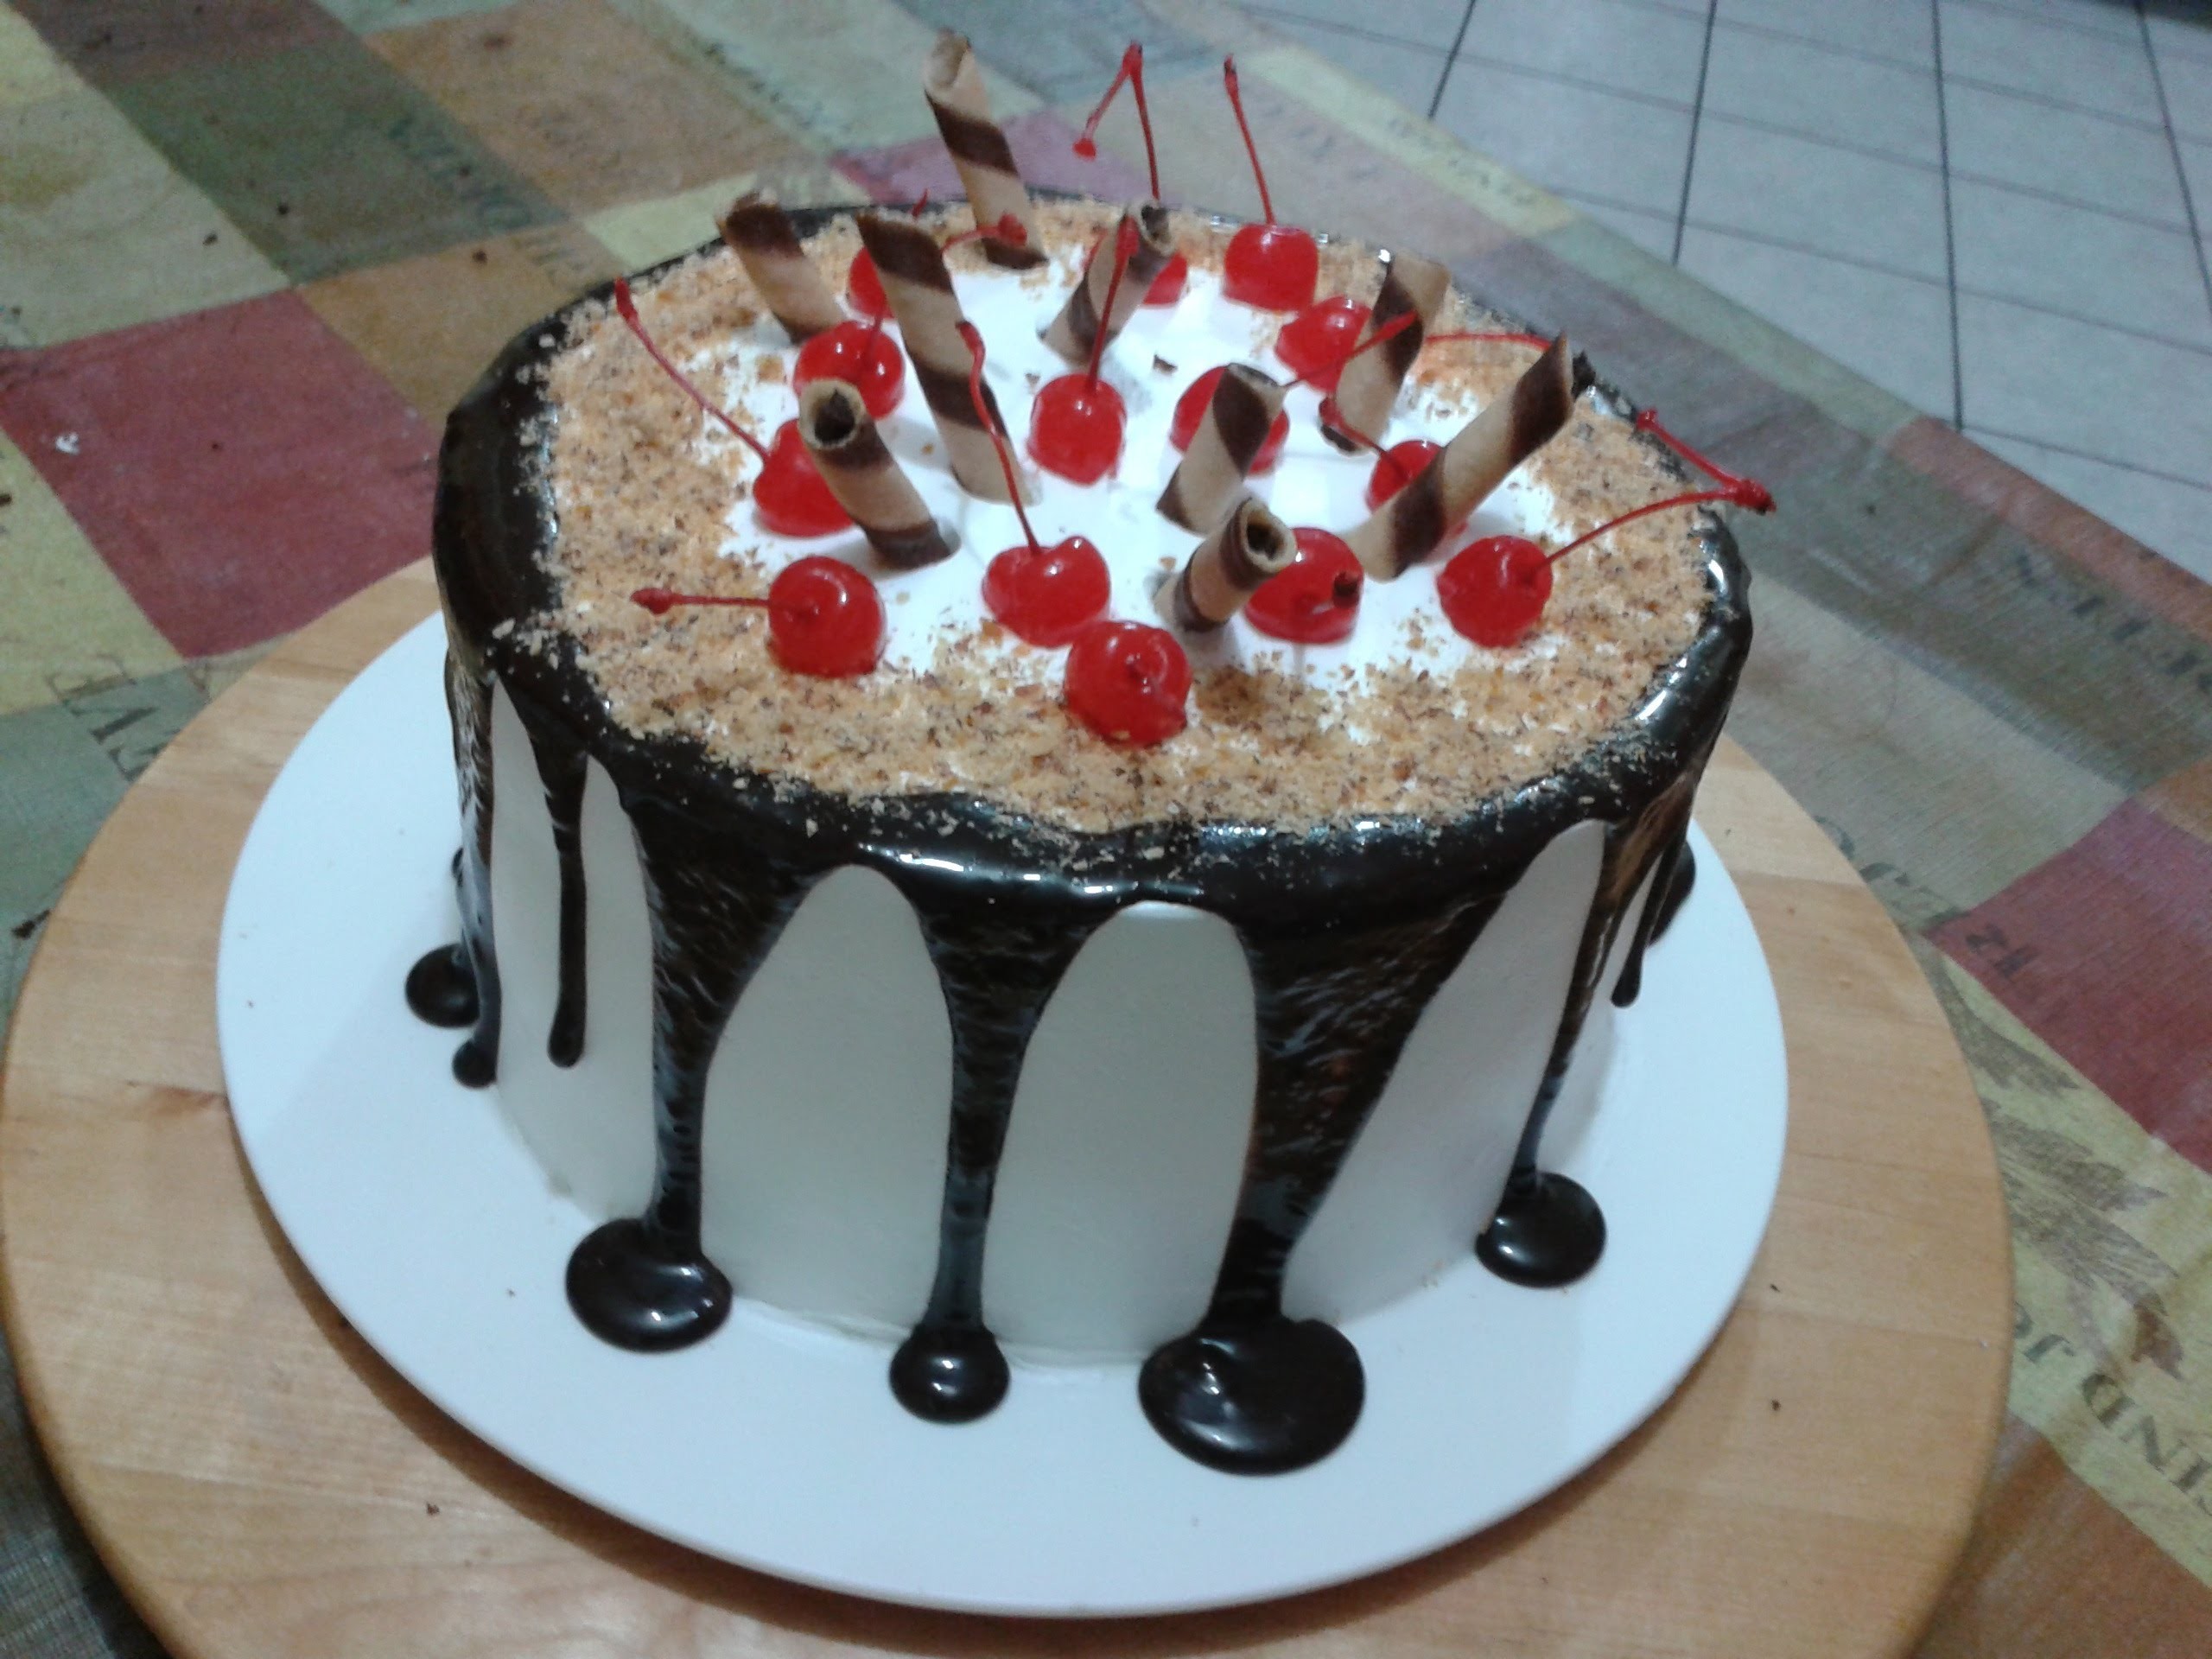 Cómo hacer un pastel artesanal con cerezas y ganache con chocolate - CHUCHEMAN1 - 2012